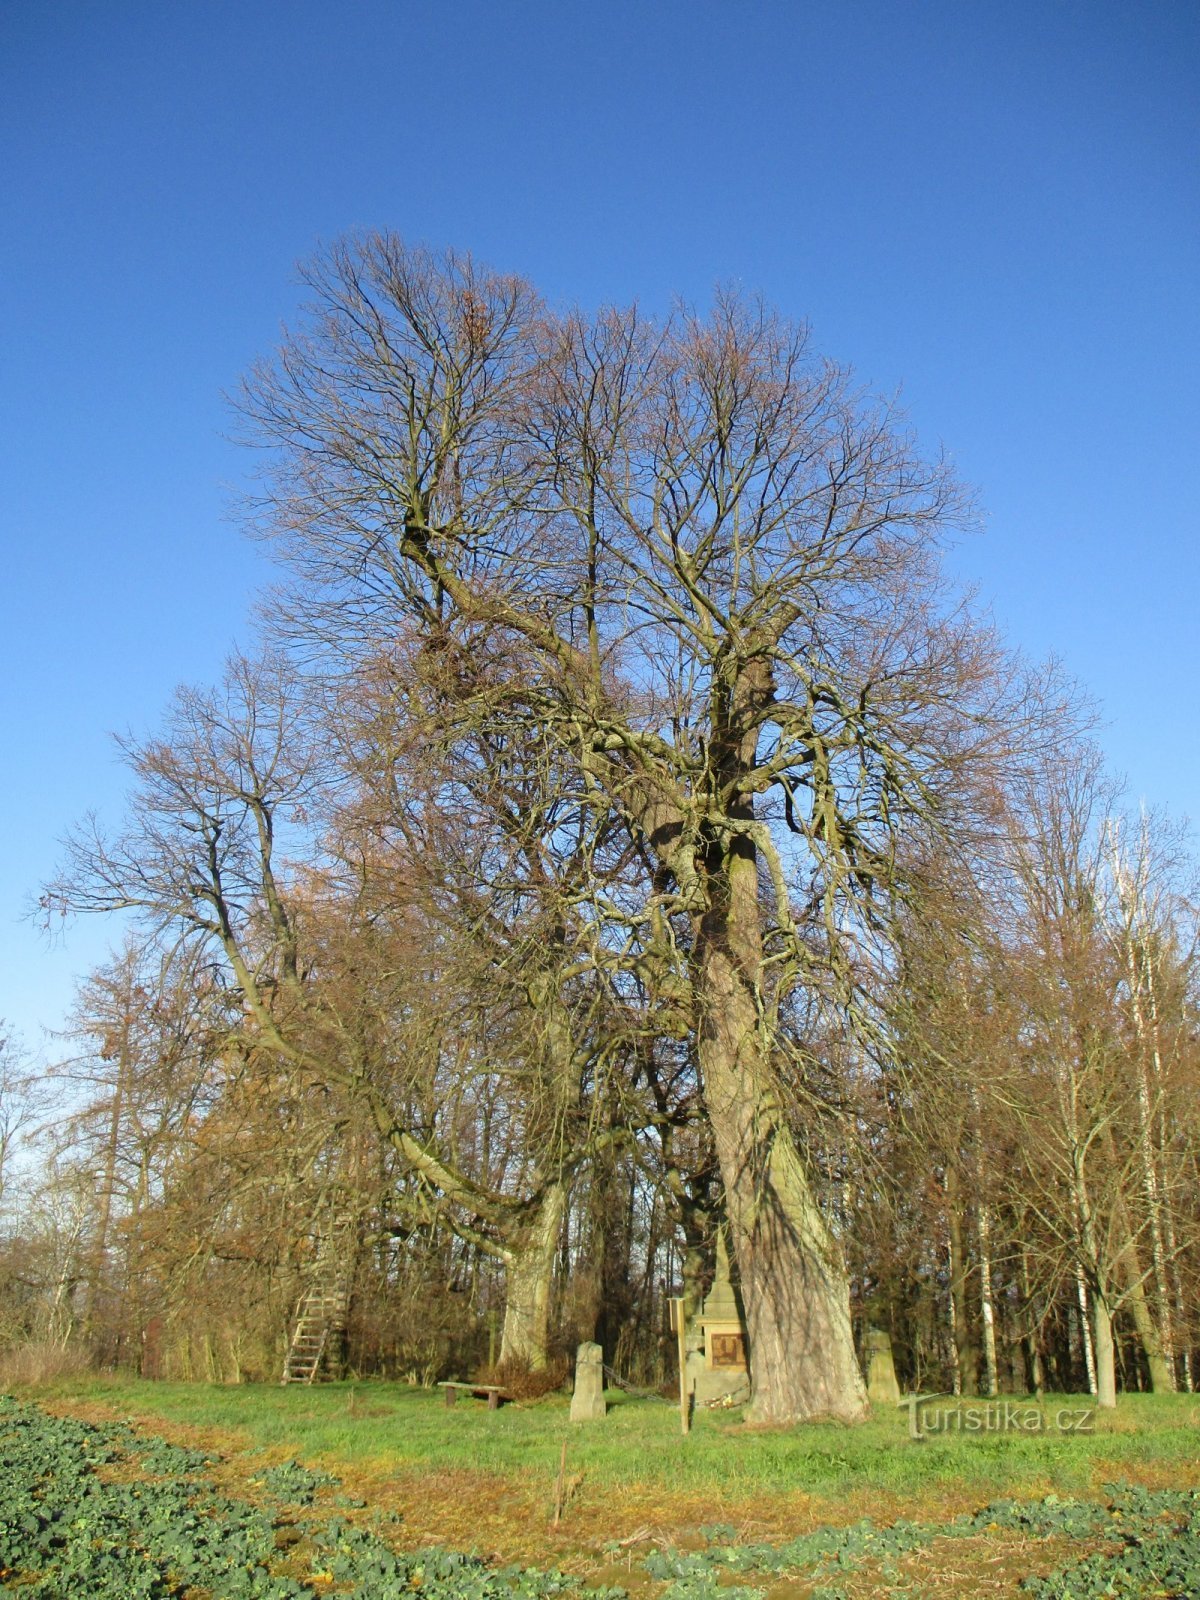 Hoříněves lindetræer og den skovklædte del af de oprindelige frugtplantager (Hoříněves, 30.11.2019/XNUMX/XNUMX)